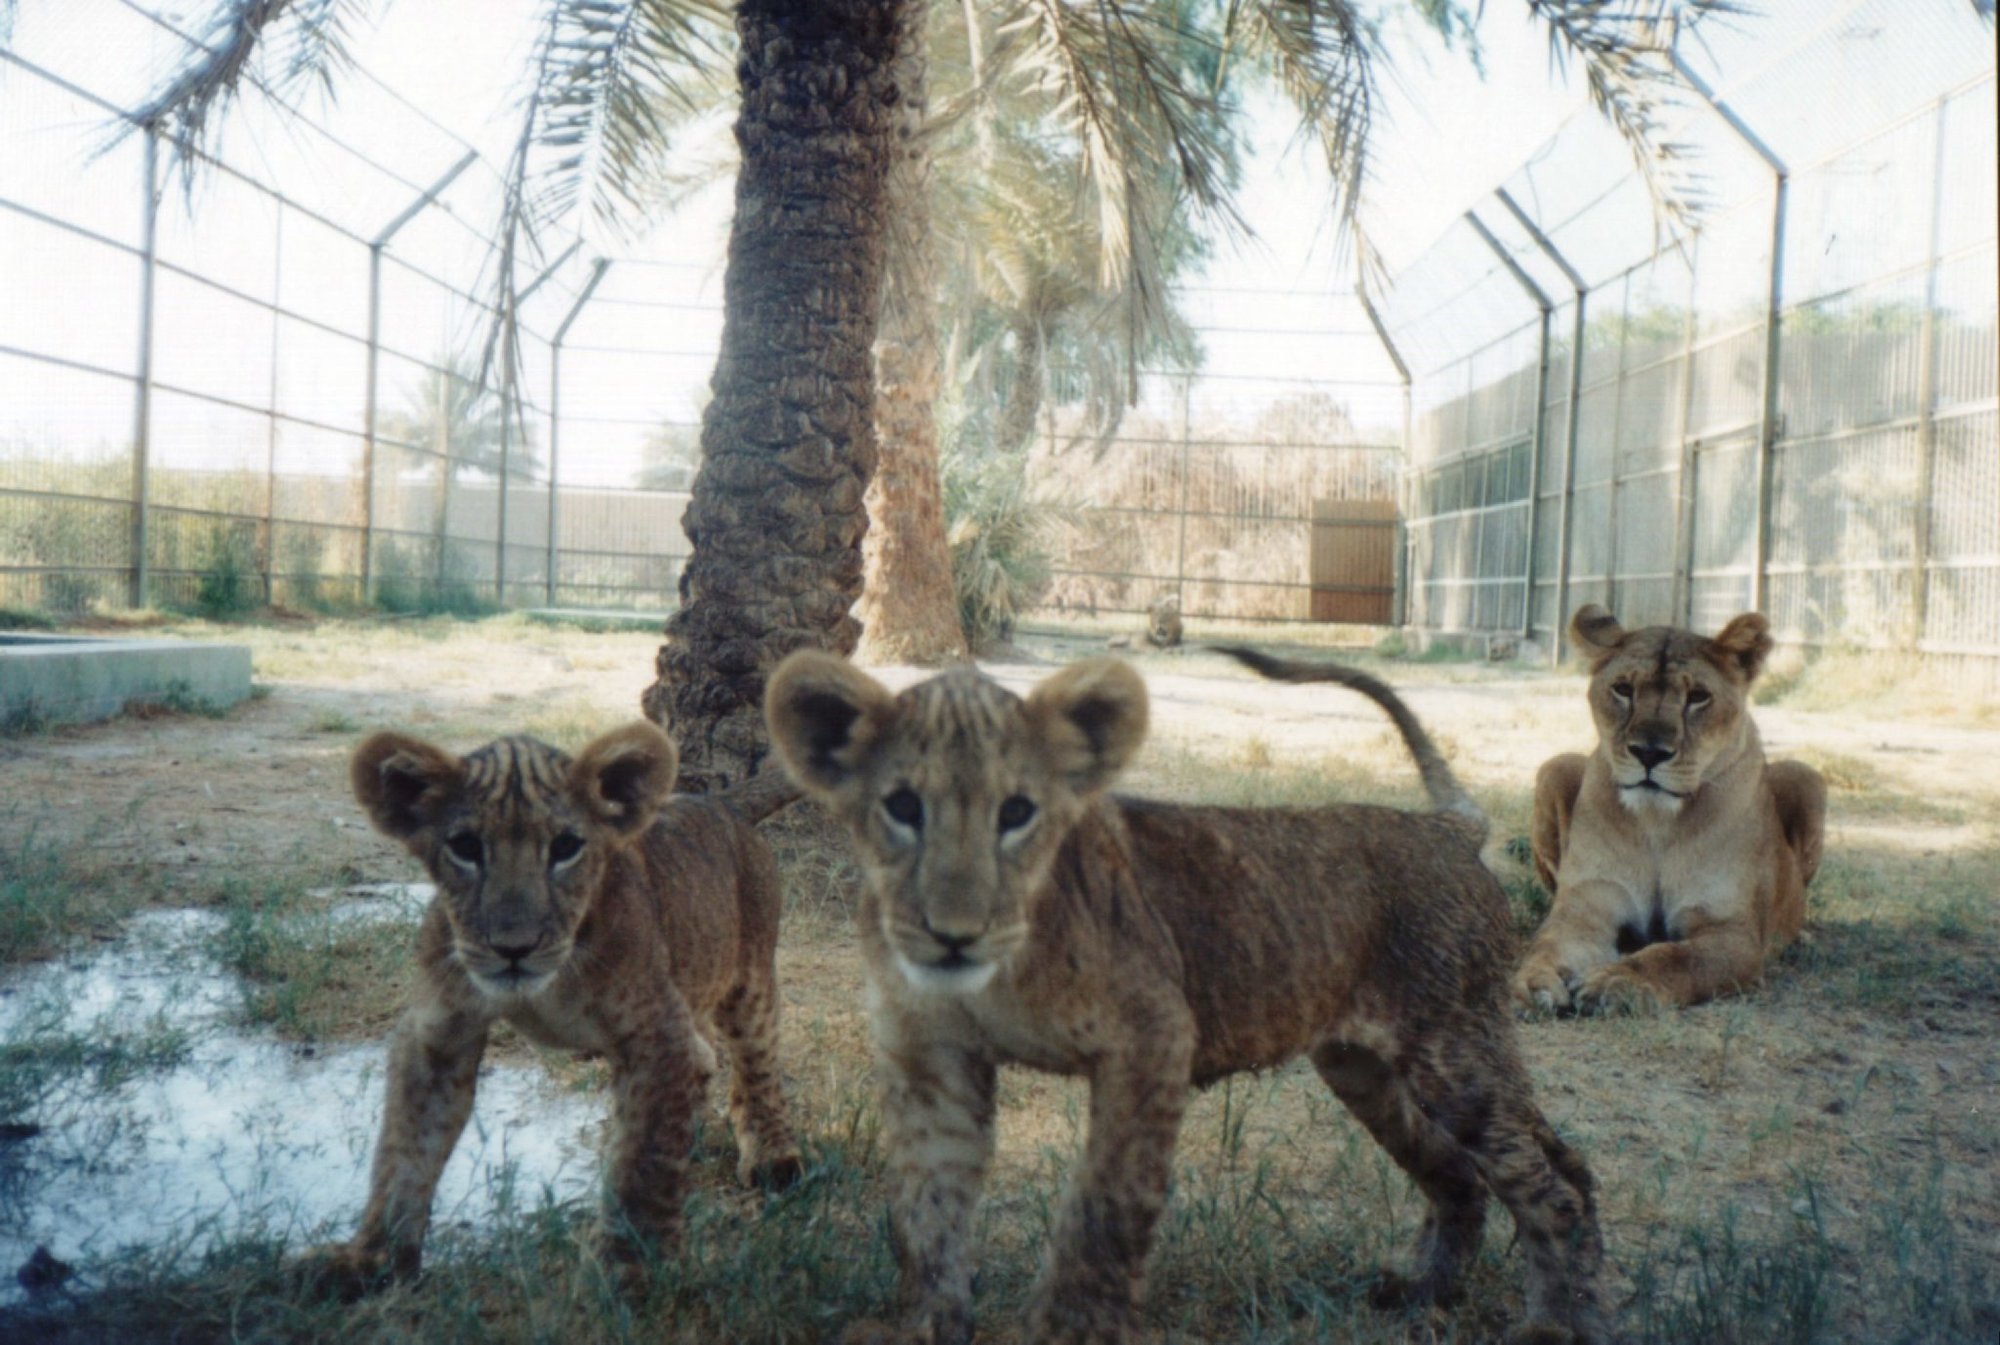 Baghdad Zoo Iraq